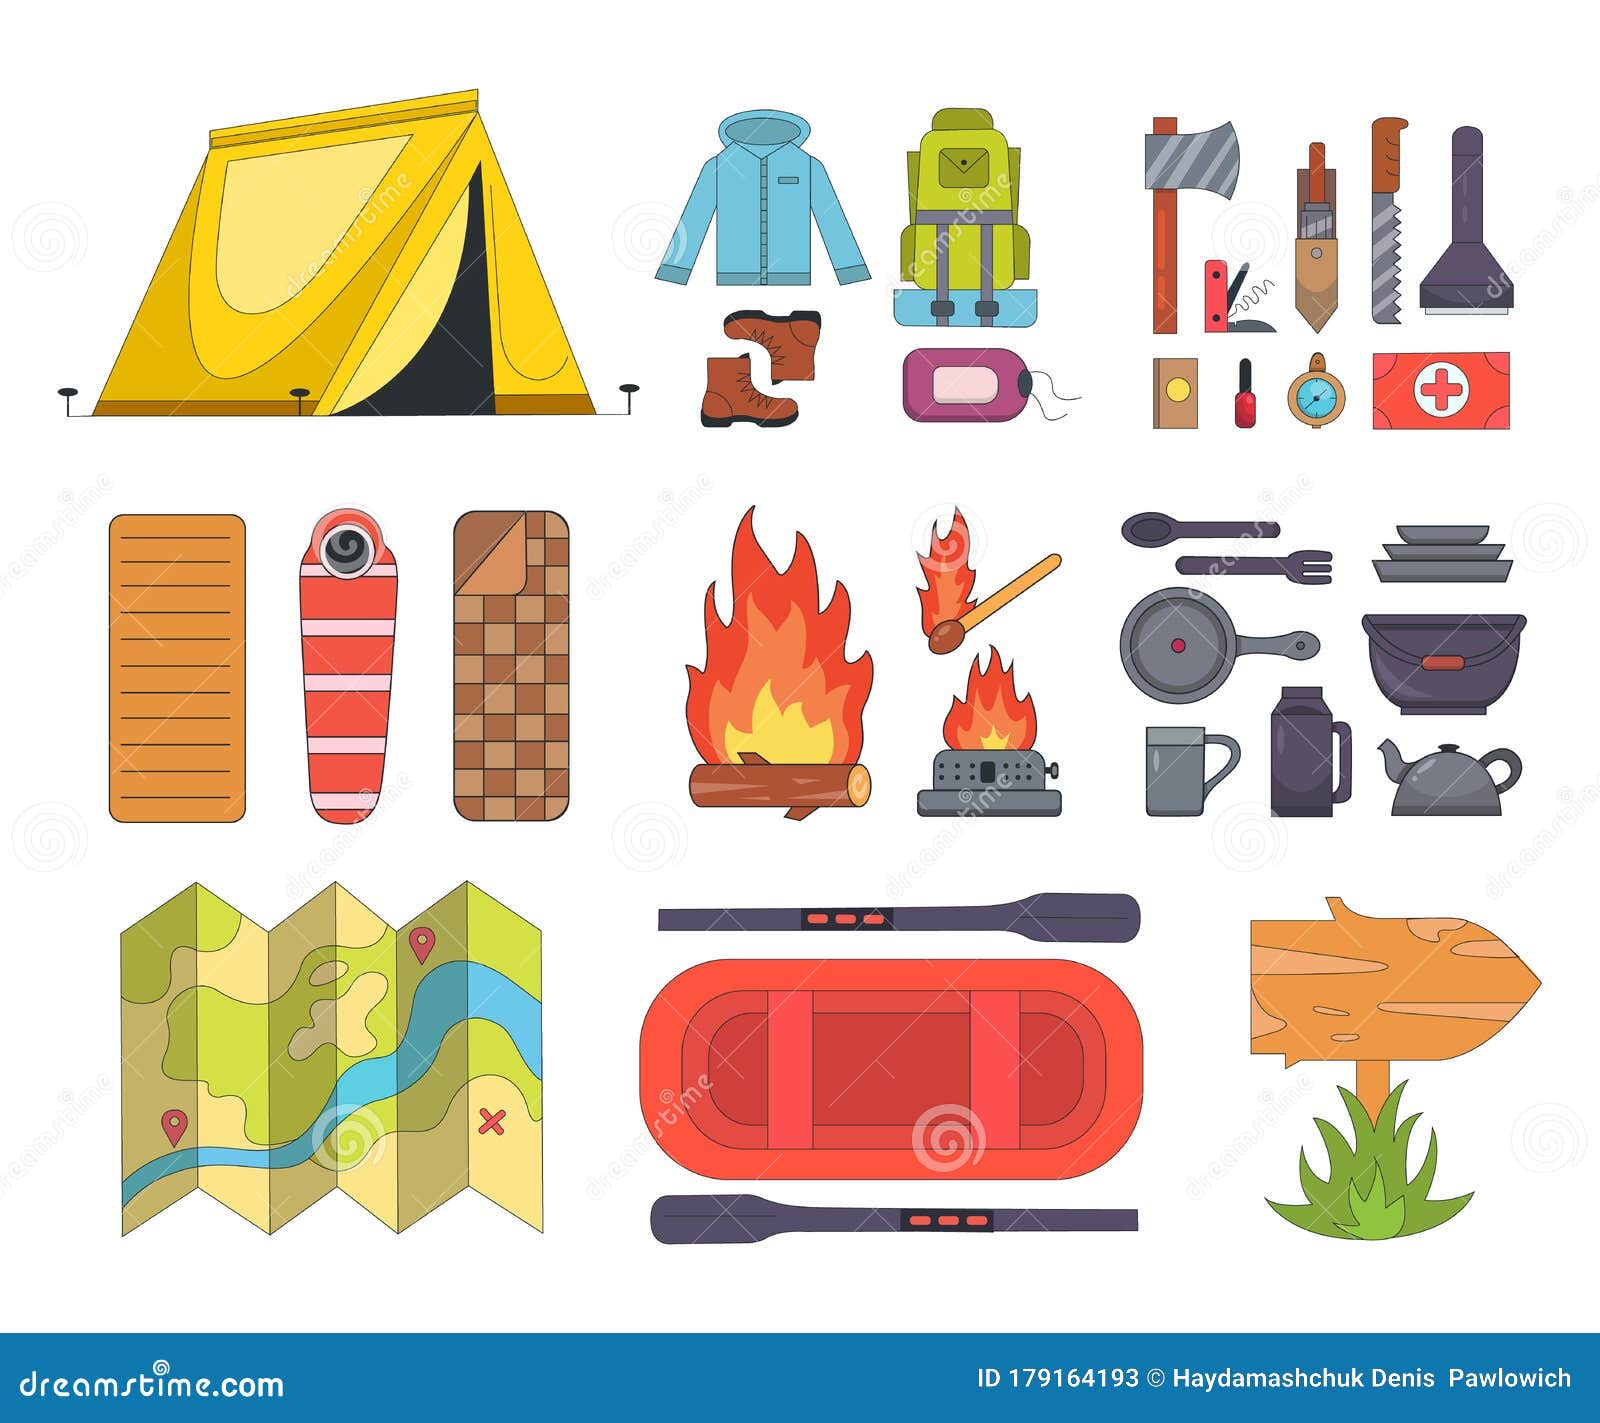 https://thumbs.dreamstime.com/z/conjunto-de-%C3%ADconos-equipo-acampada-al-estilo-dibujos-animados-material-y-herramientas-camping-las-caricaturas-mapa-bolsos-179164193.jpg